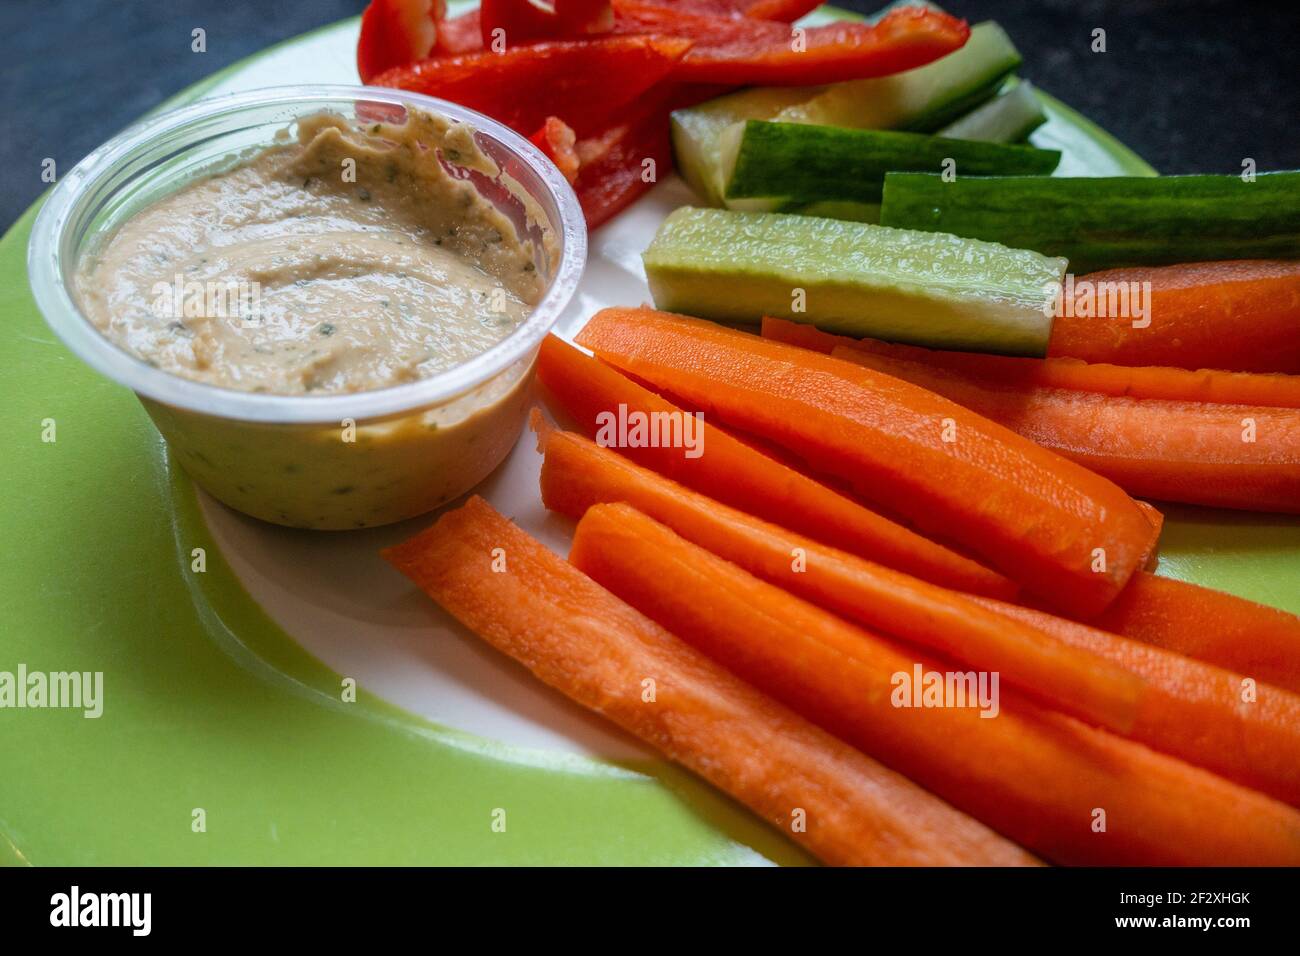 Gesunde Mahlzeit aus geschnittenem, rohem Gemüse mit einem Humusdip Stockfoto